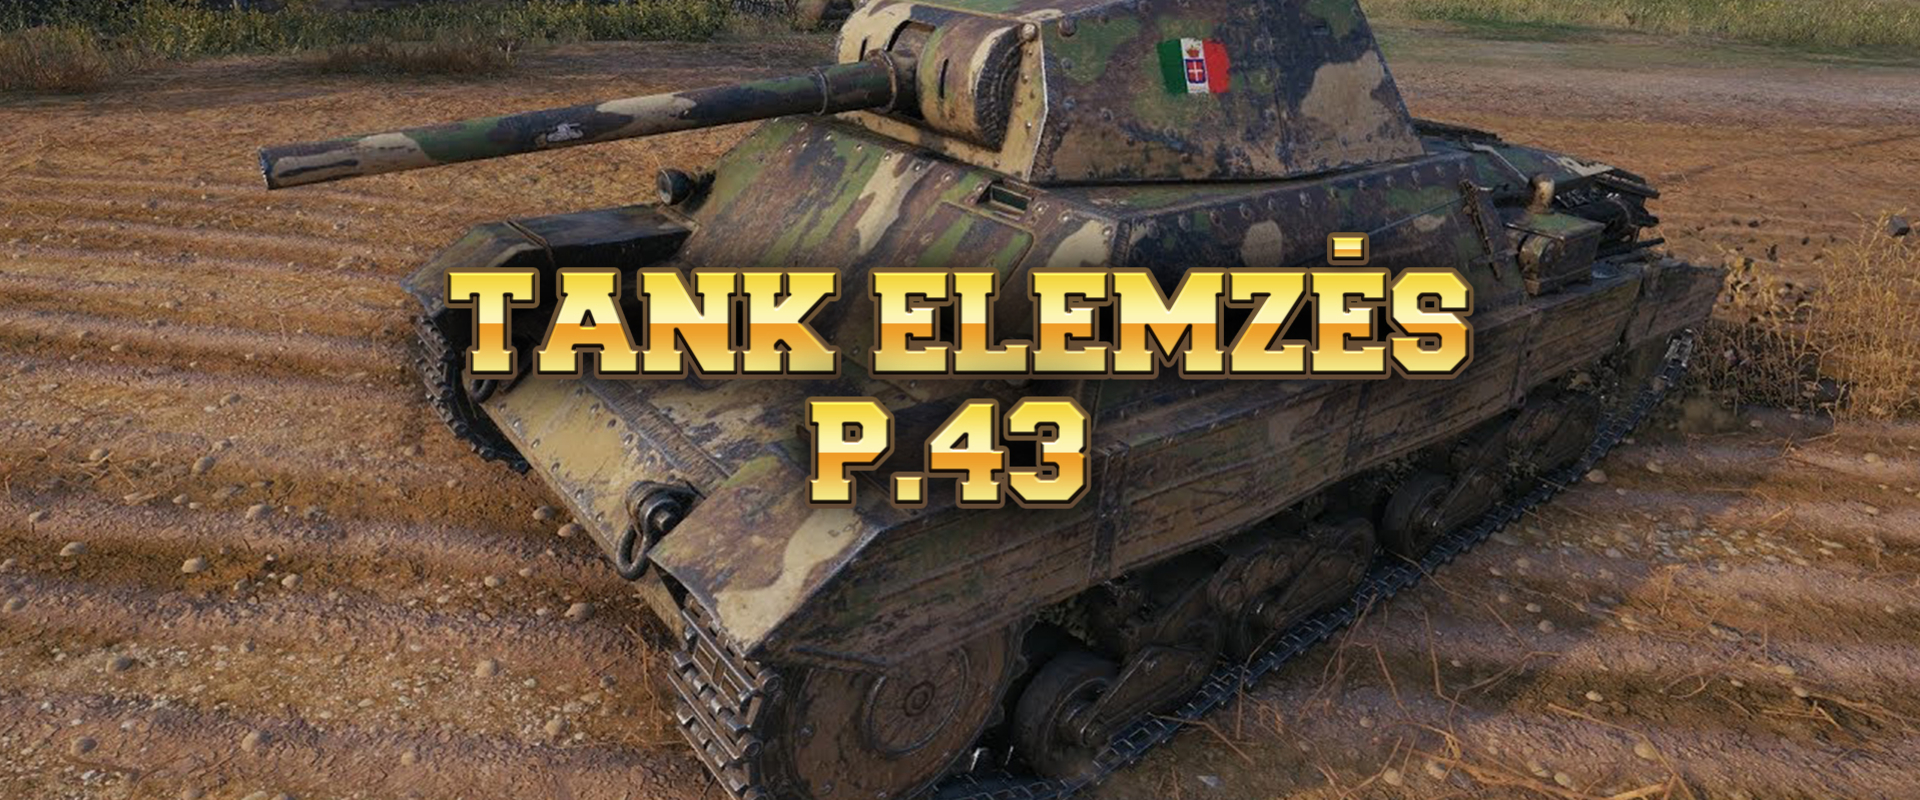 Milyen tank valójában a P.43?